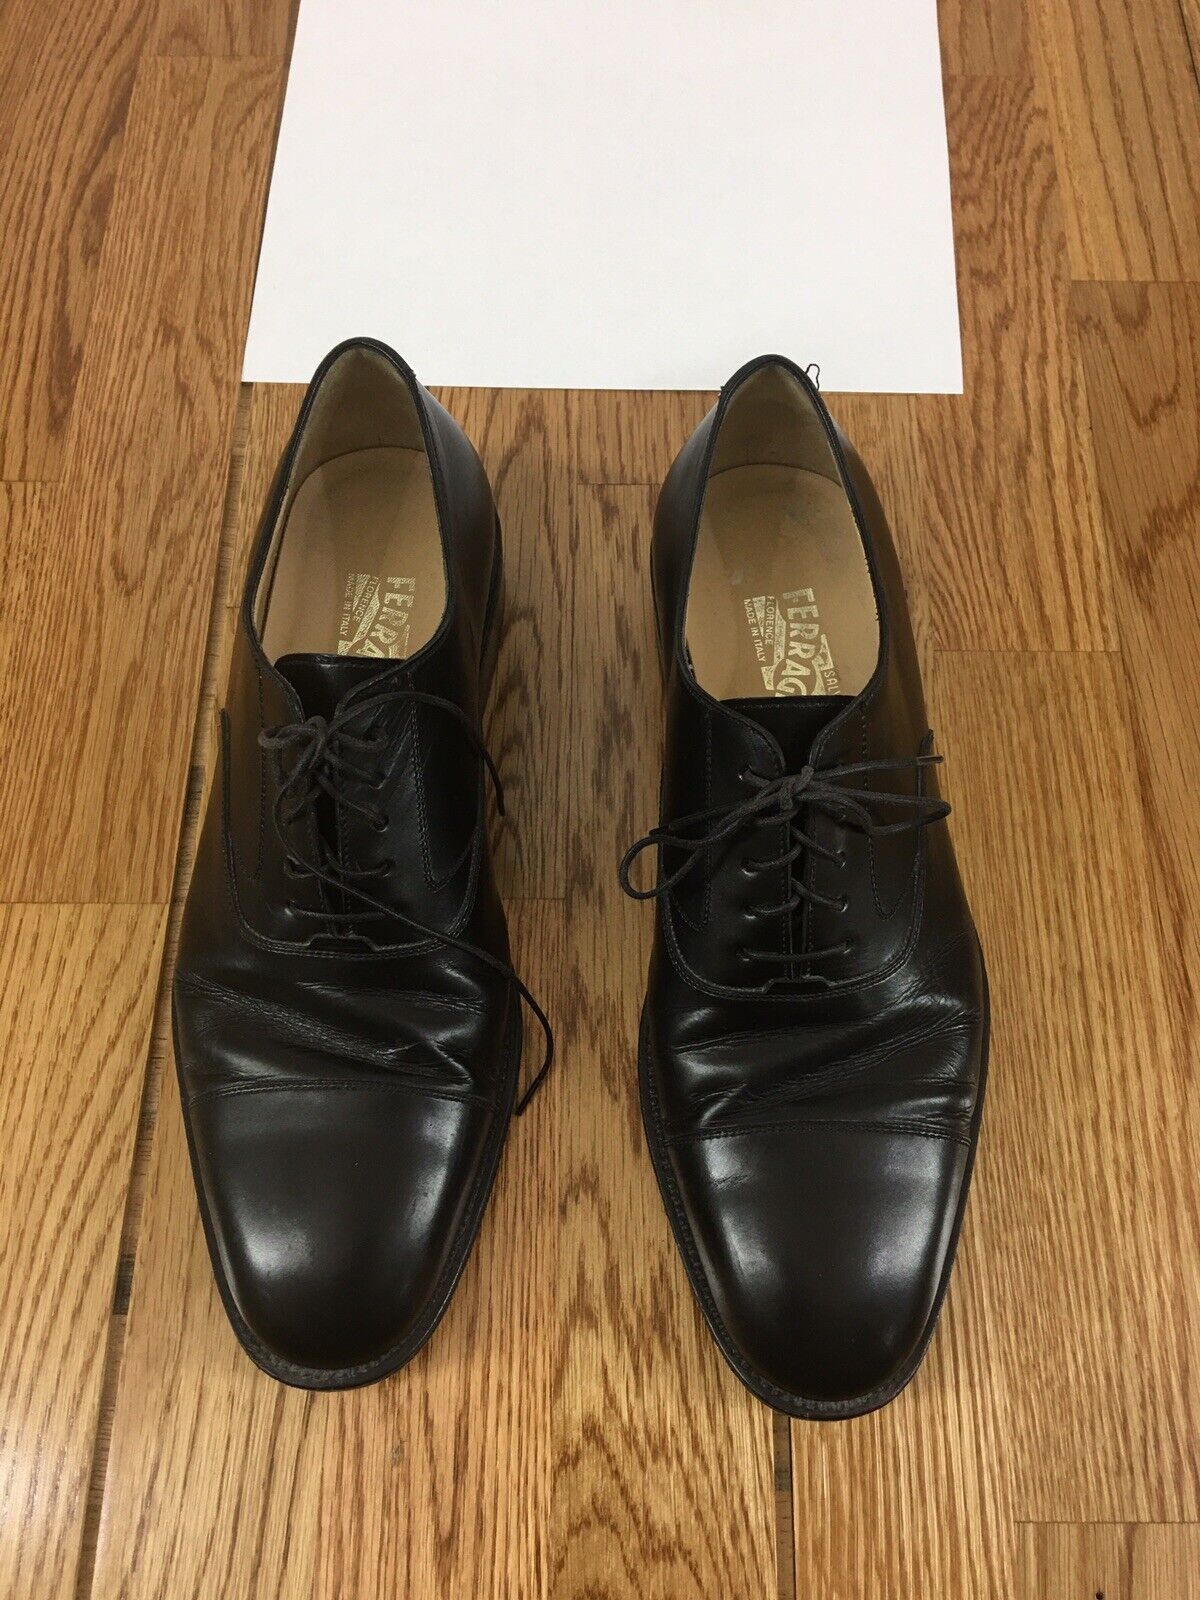 Salvatore Ferragamo Men’s size 10-M Black Leather Oxford Cap Toe Shoes Florence